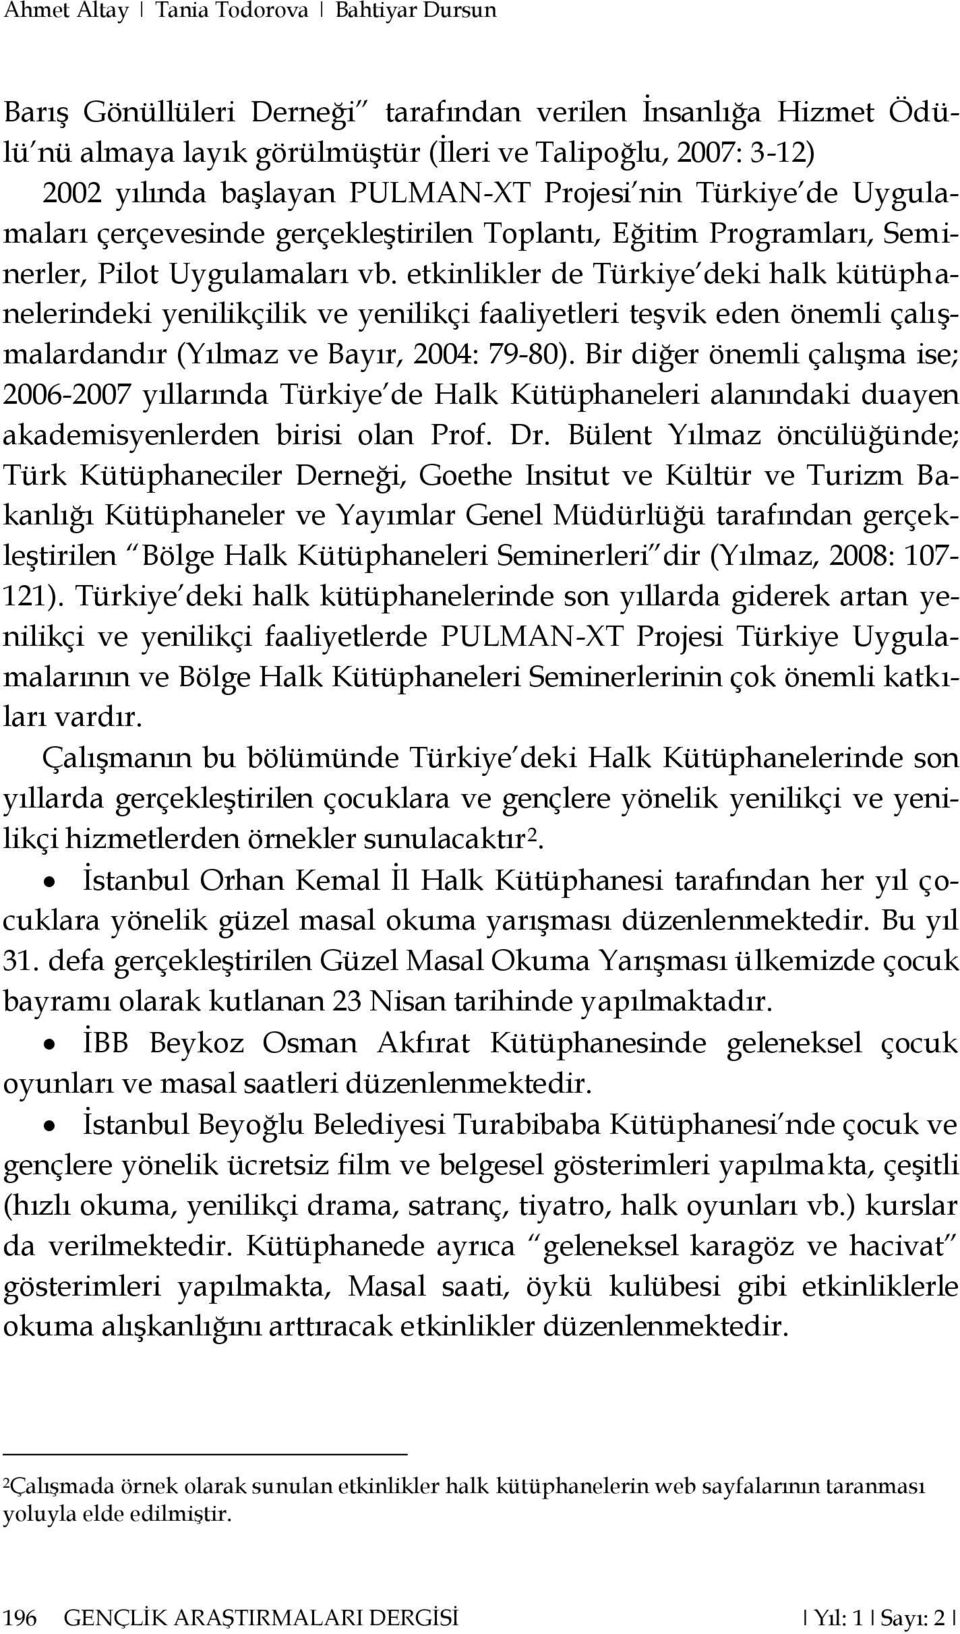 etkinlikler de Türkiye deki halk kütüphanelerindeki yenilikçilik ve yenilikçi faaliyetleri teşvik eden önemli çalışmalardandır (Yılmaz ve Bayır, 2004: 79-80).